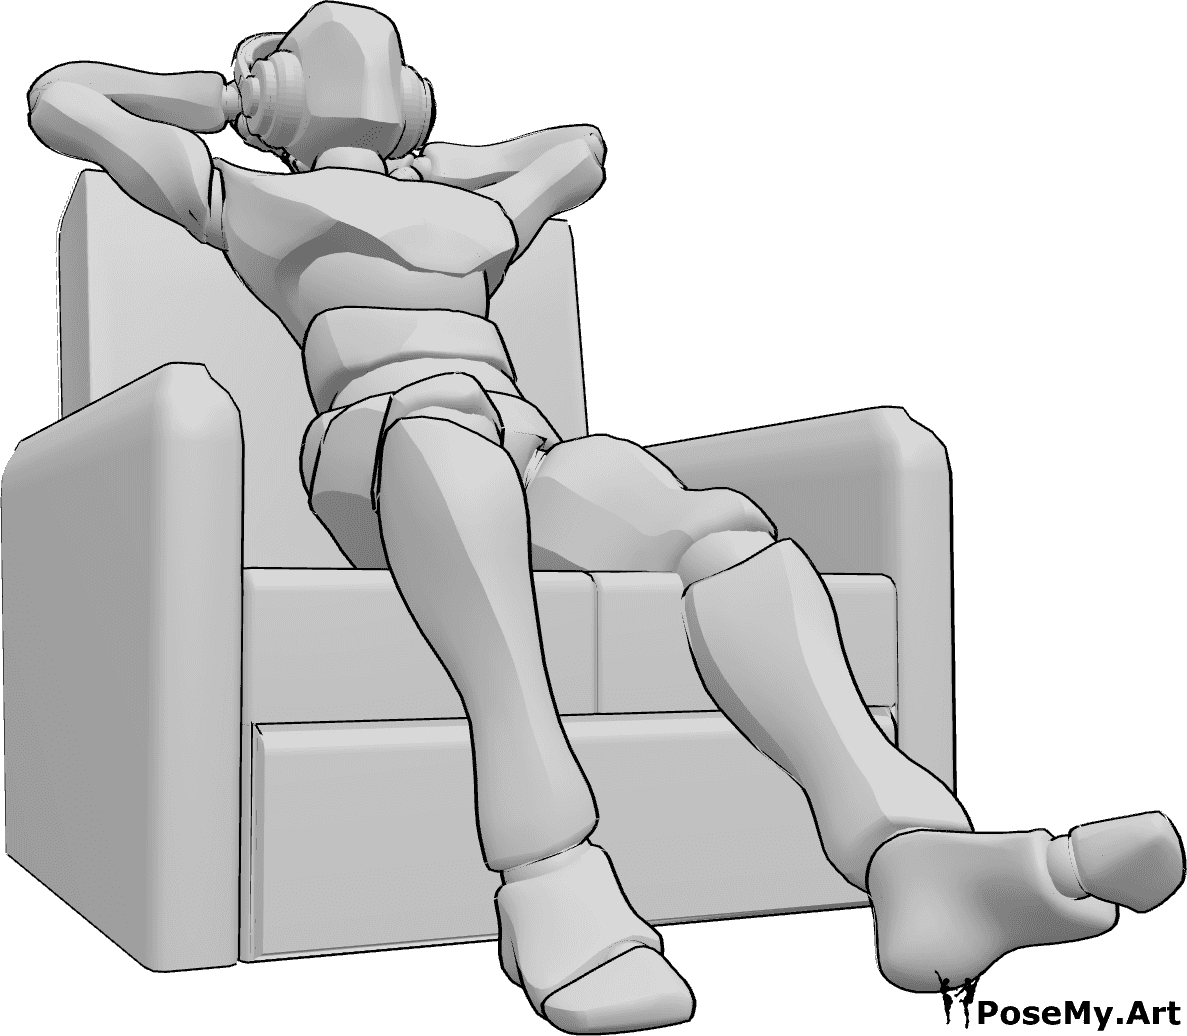 Posen-Referenz- Sitzend Musik hören Pose - Mann sitzt bequem auf der Couch und hört Musik über Kopfhörer